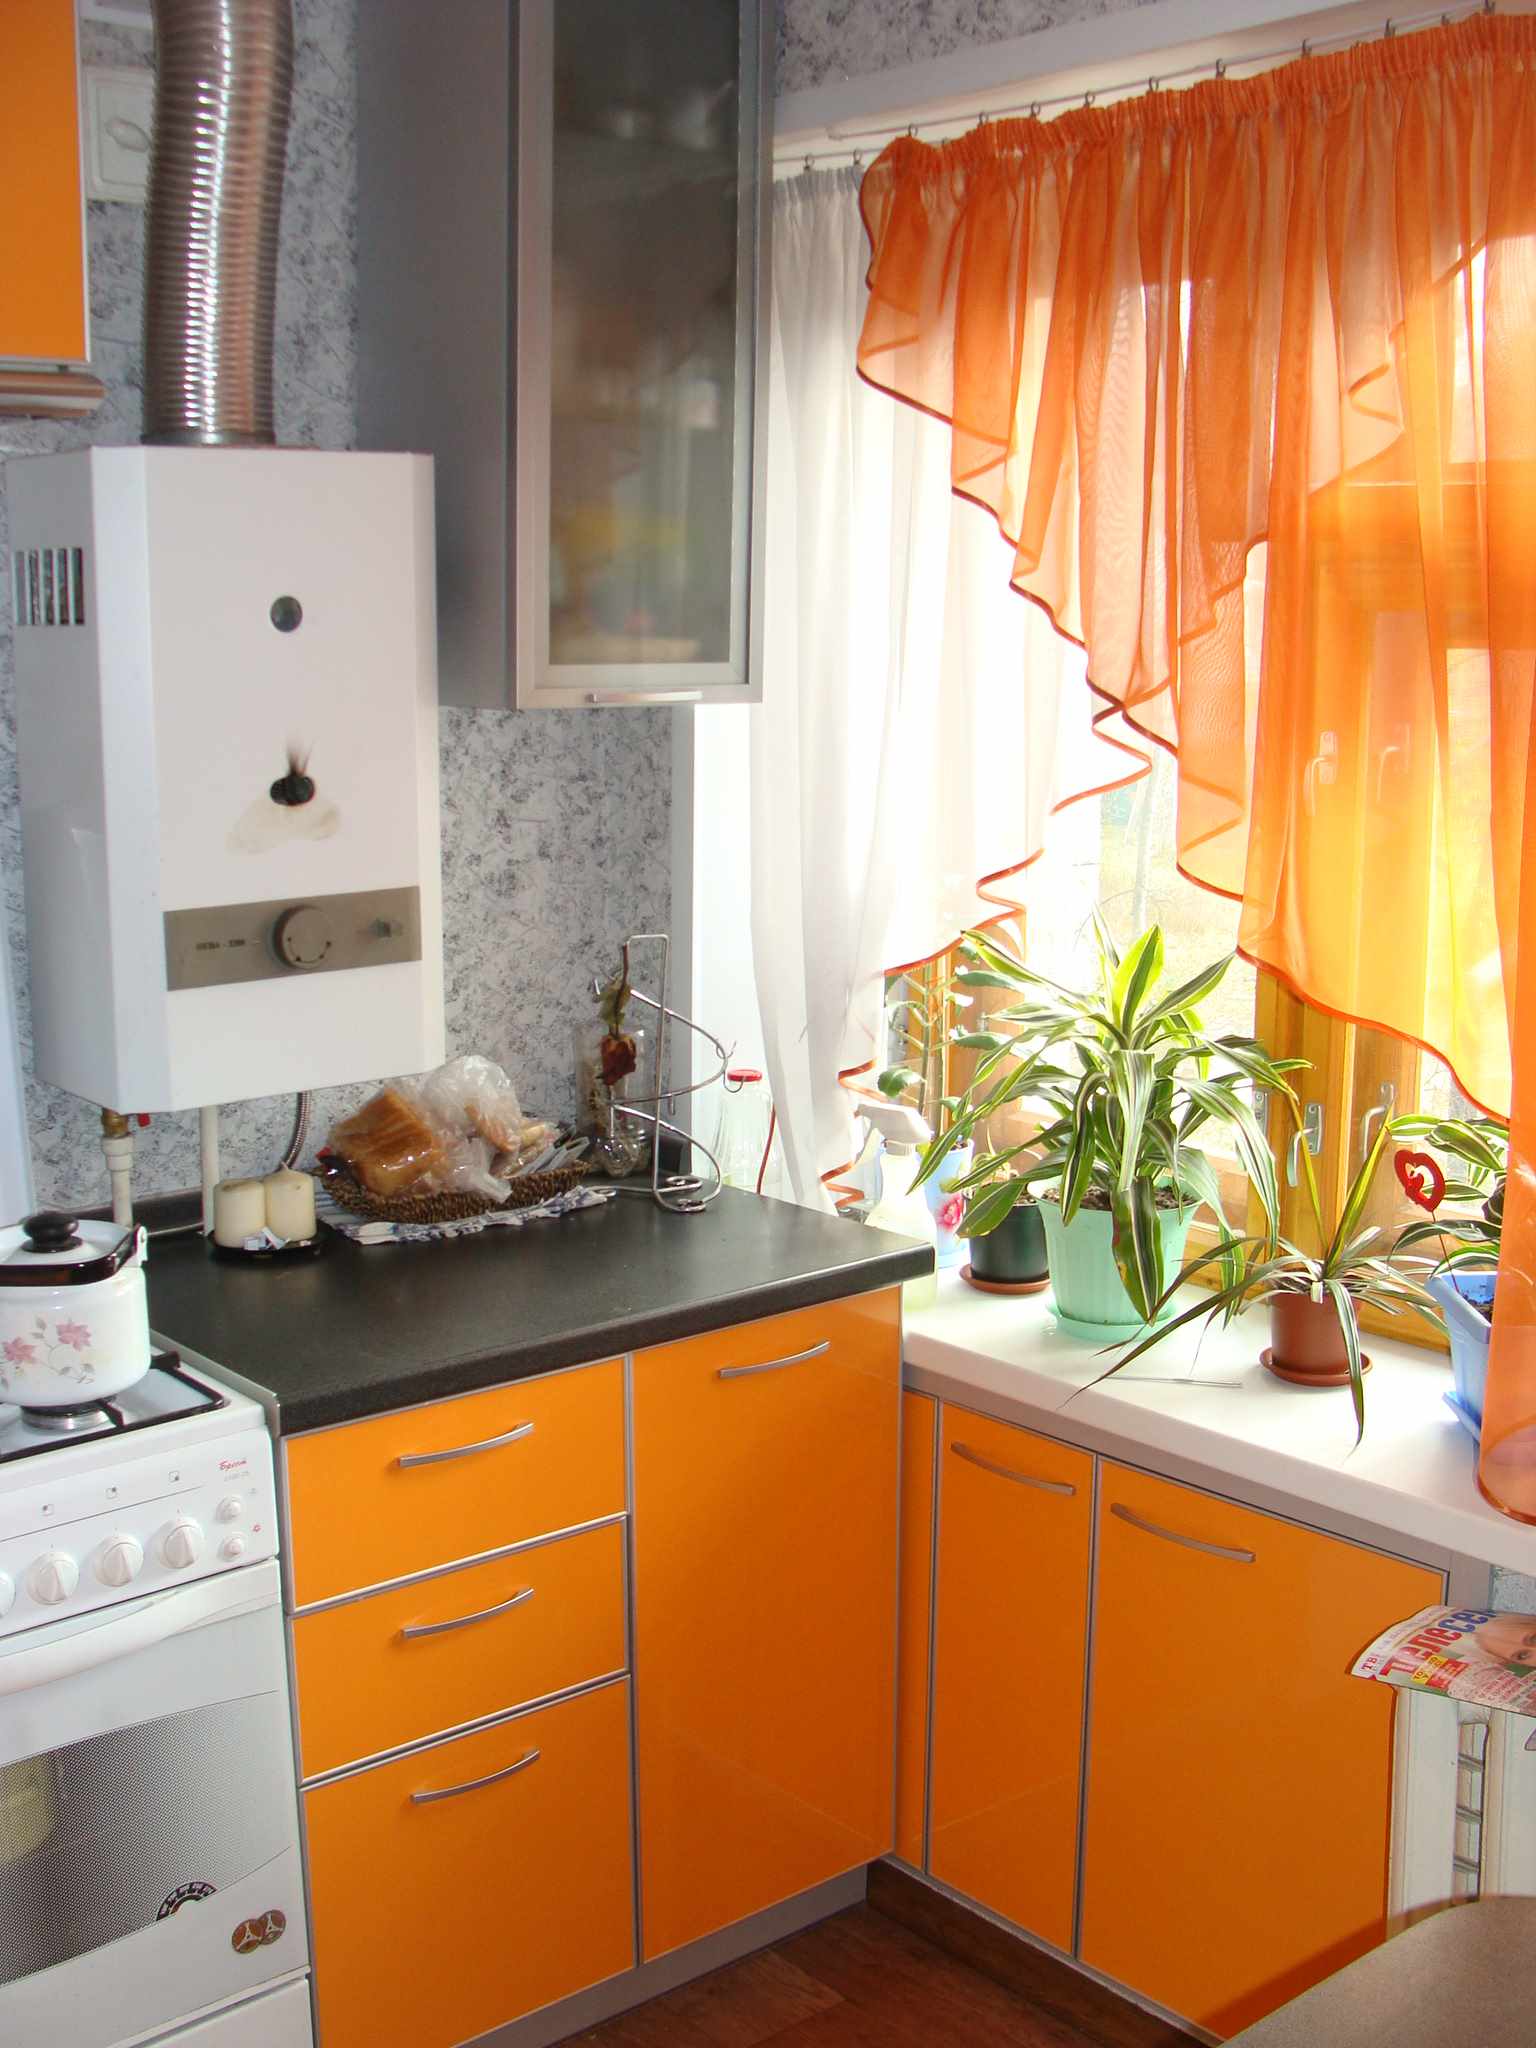 Gražaus virtuvės interjero su dujiniu katilu pavyzdys